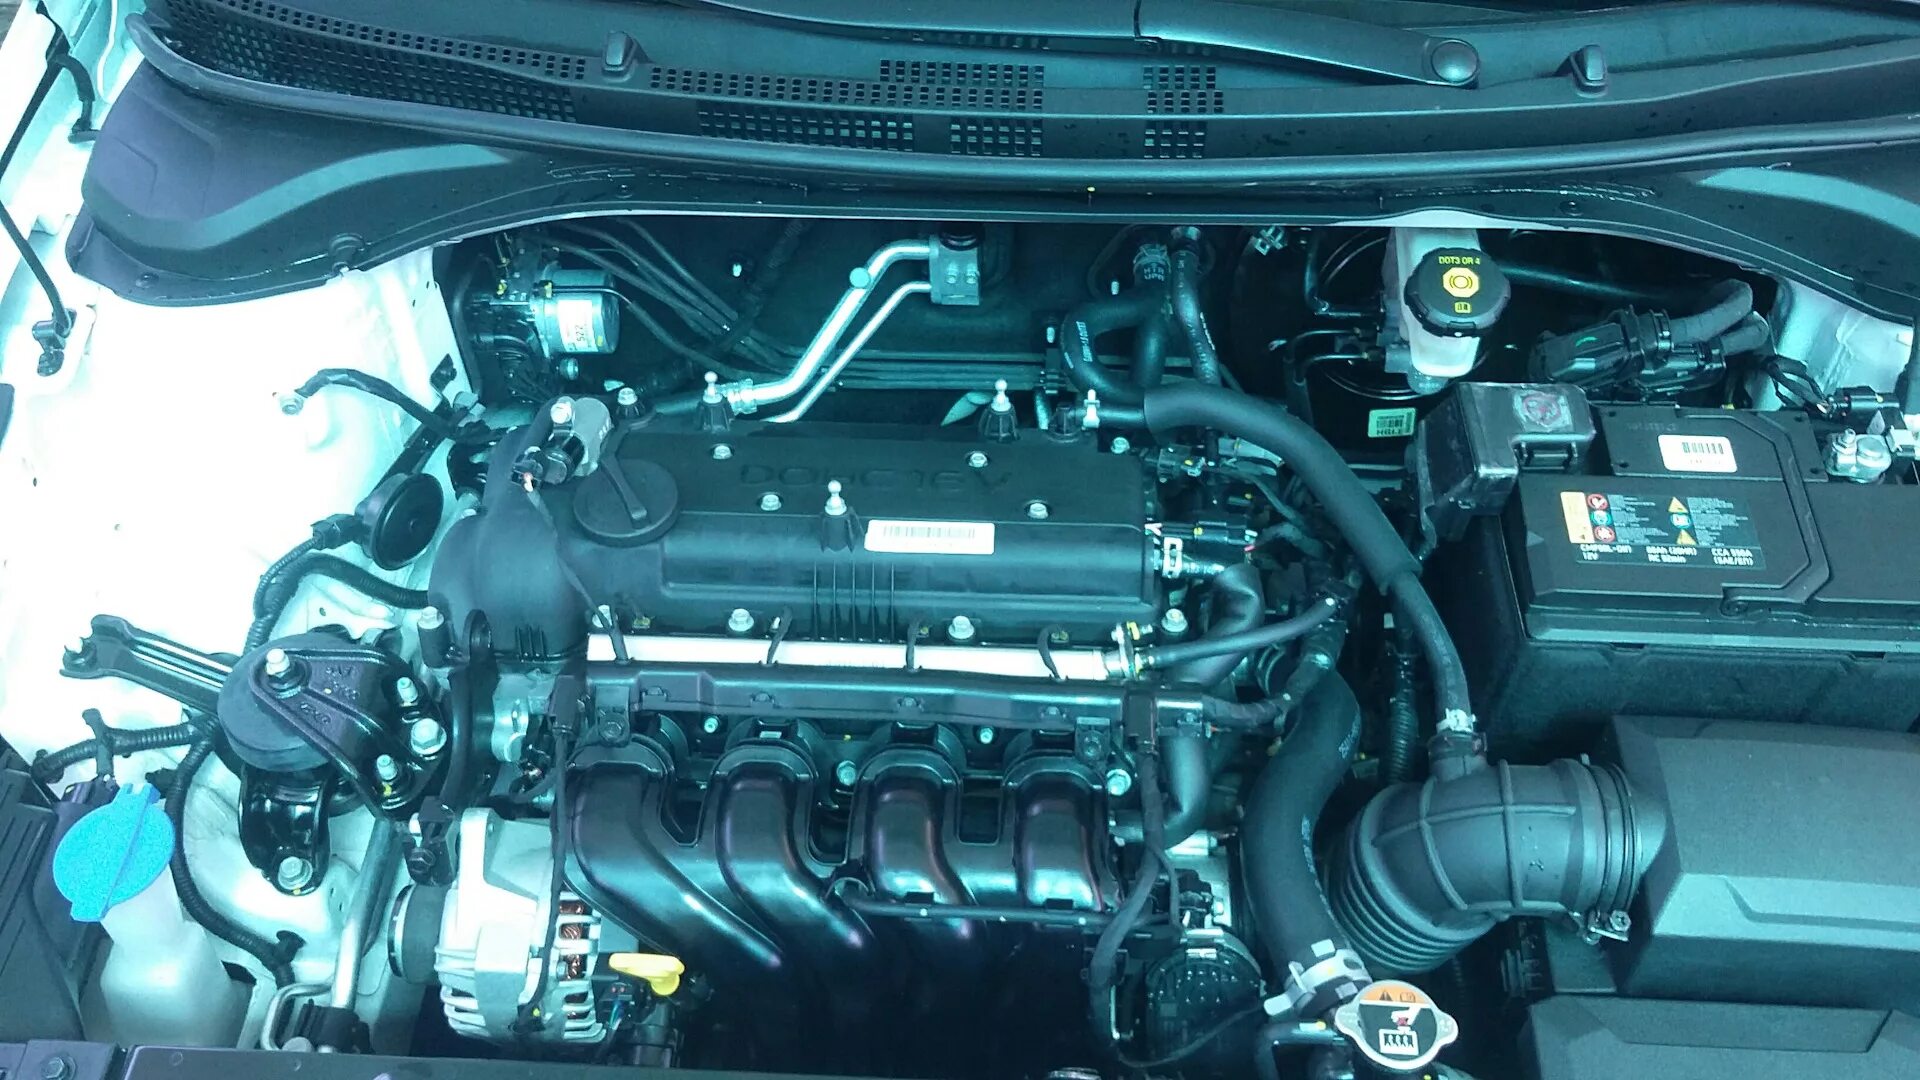 Хендай солярис 2011 двигатель. Двигатель Хендай Солярис 2 1.6. Двигатель Солярис 1.4. Подкапотка Солярис 1.6. Hyundai Solaris 2015 двигатель.